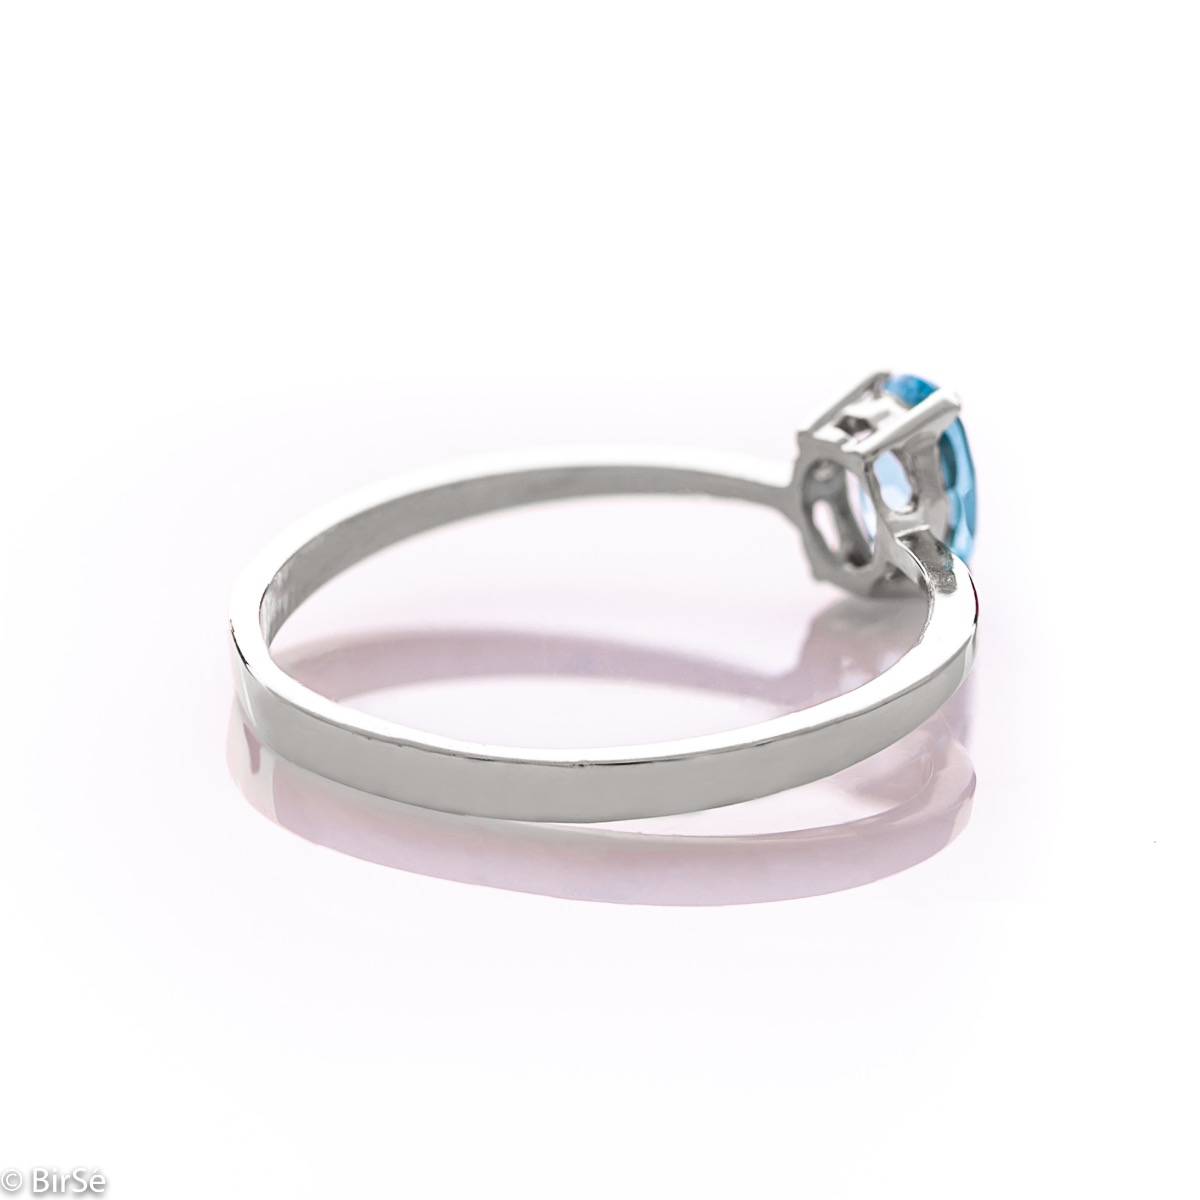 Златен пръстен - Естествен син топаз 0,57 ct